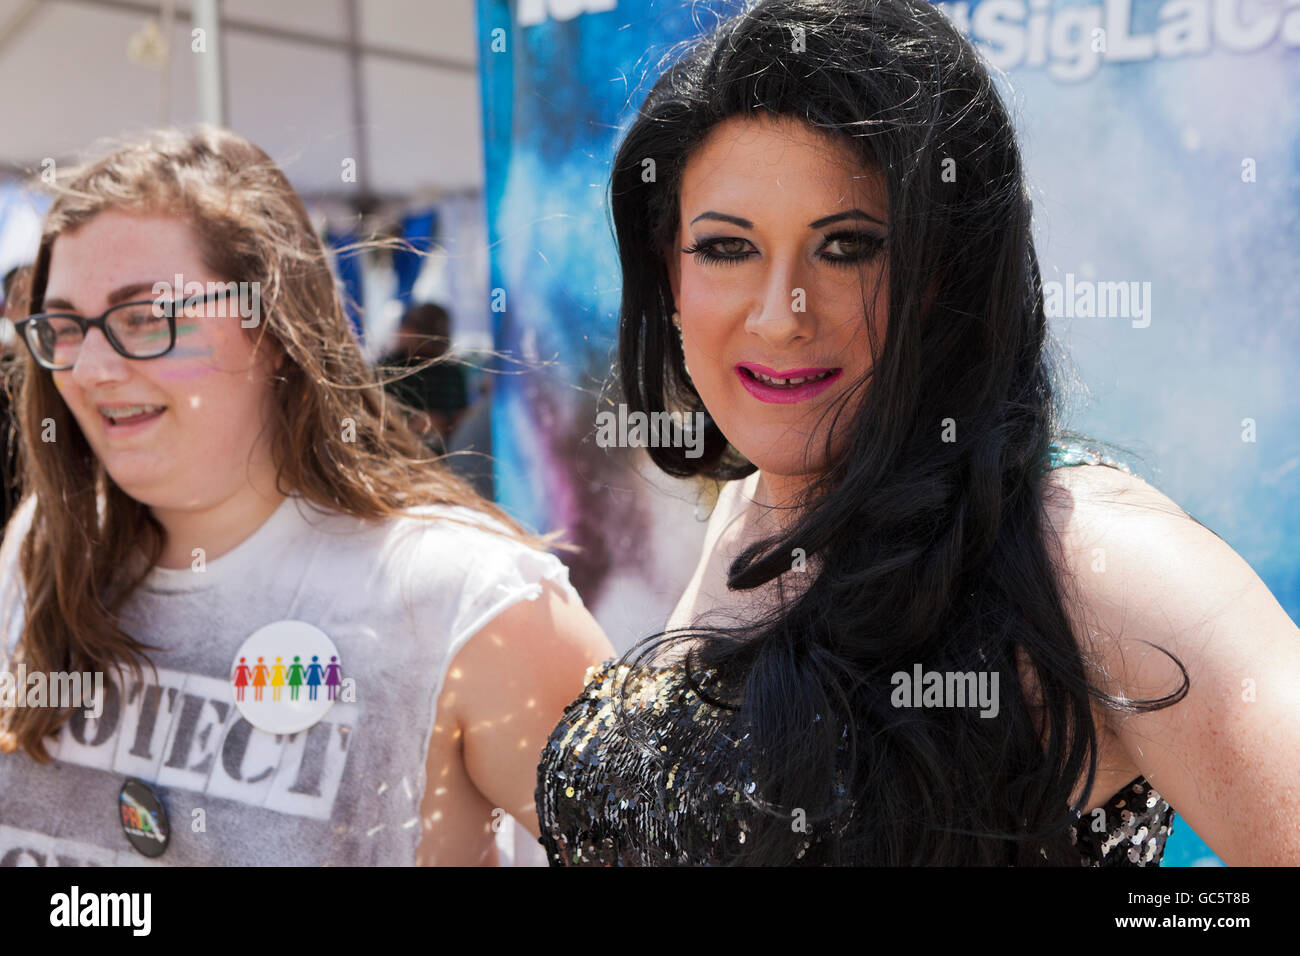 Drag queen at gay pride festival - Washington, DC USA Stock Photo